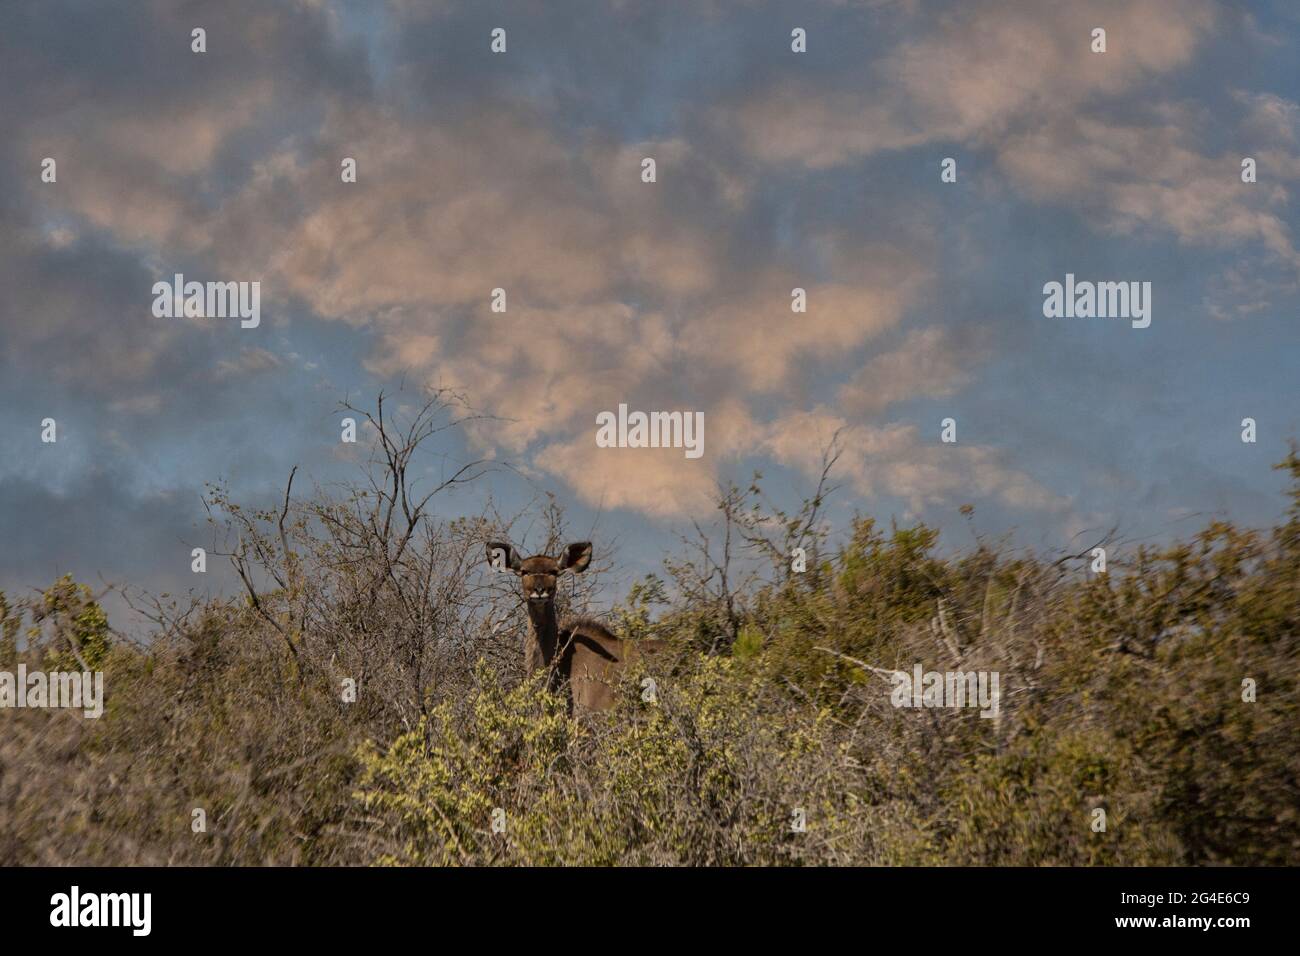 Greater Kudu (Tragelaphus strepsiceros), Western Cape, South Africa Stock Photo